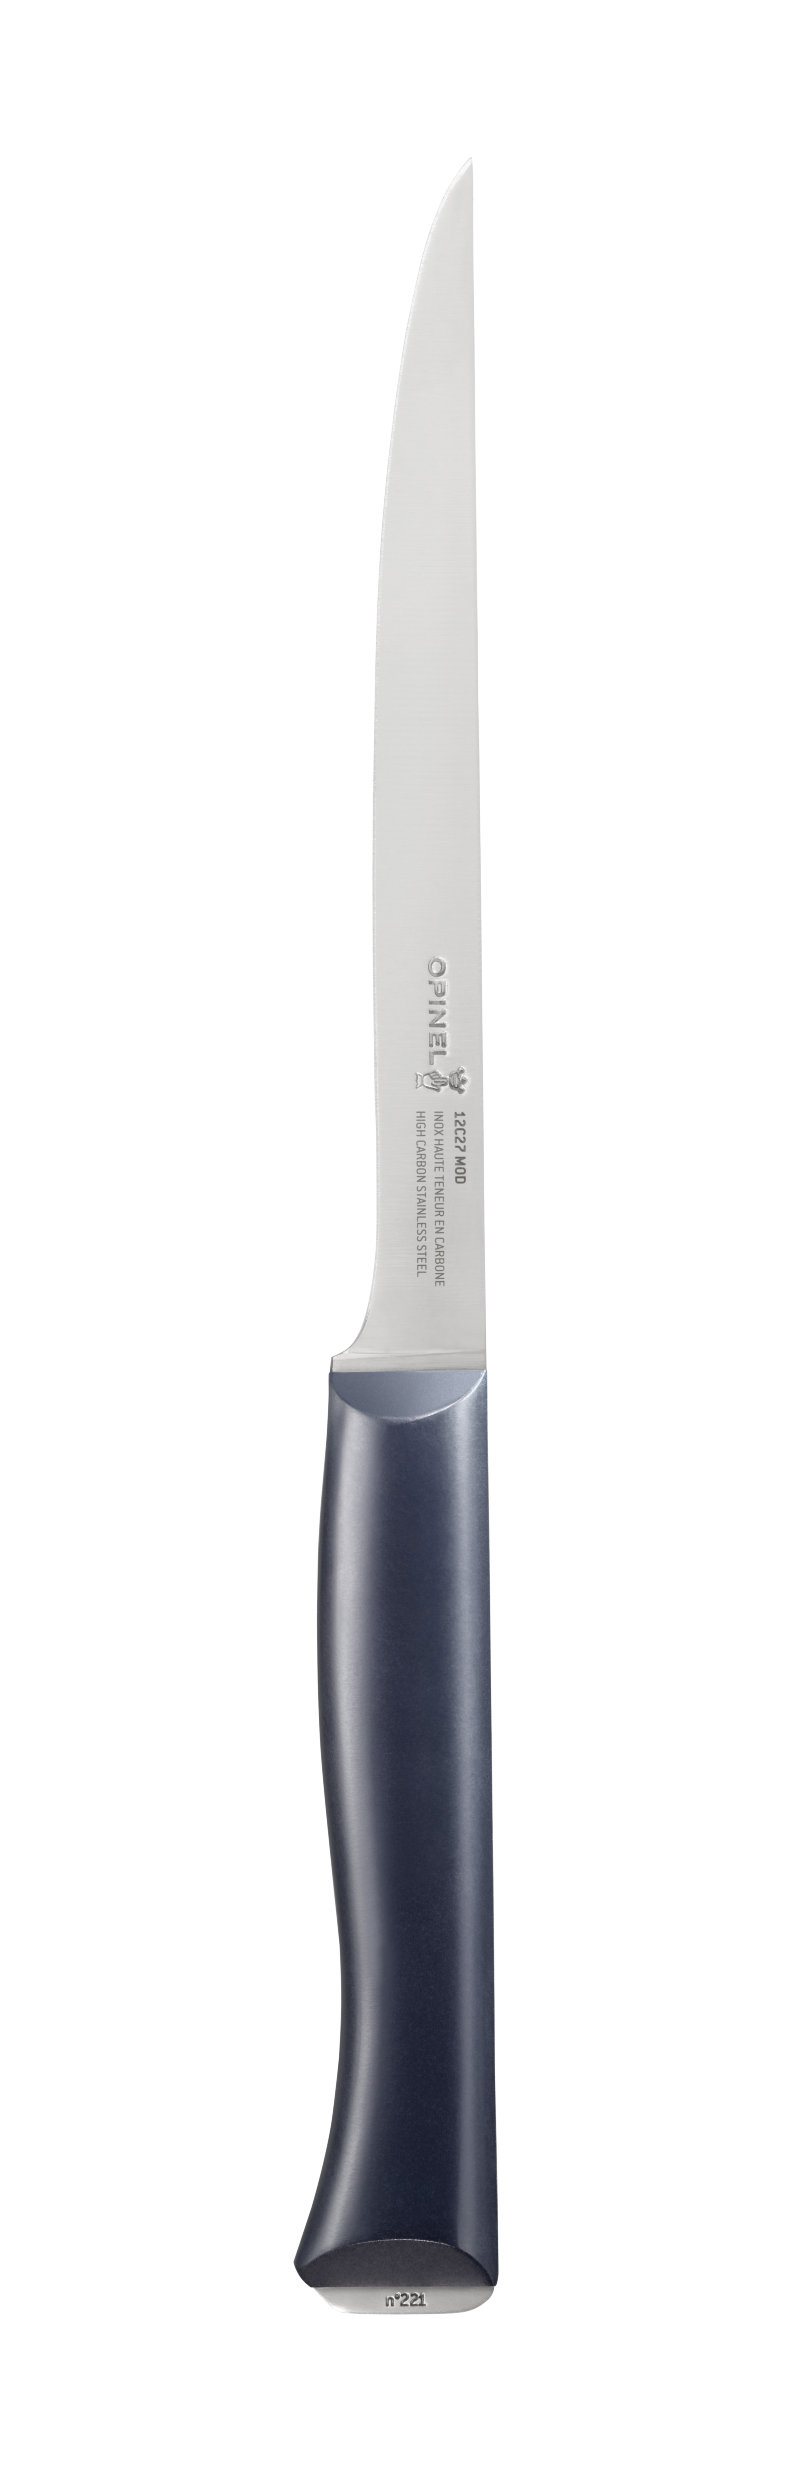 Нож филейный Opinel №221, деревянная рукоять, нержавеющая сталь, 002221